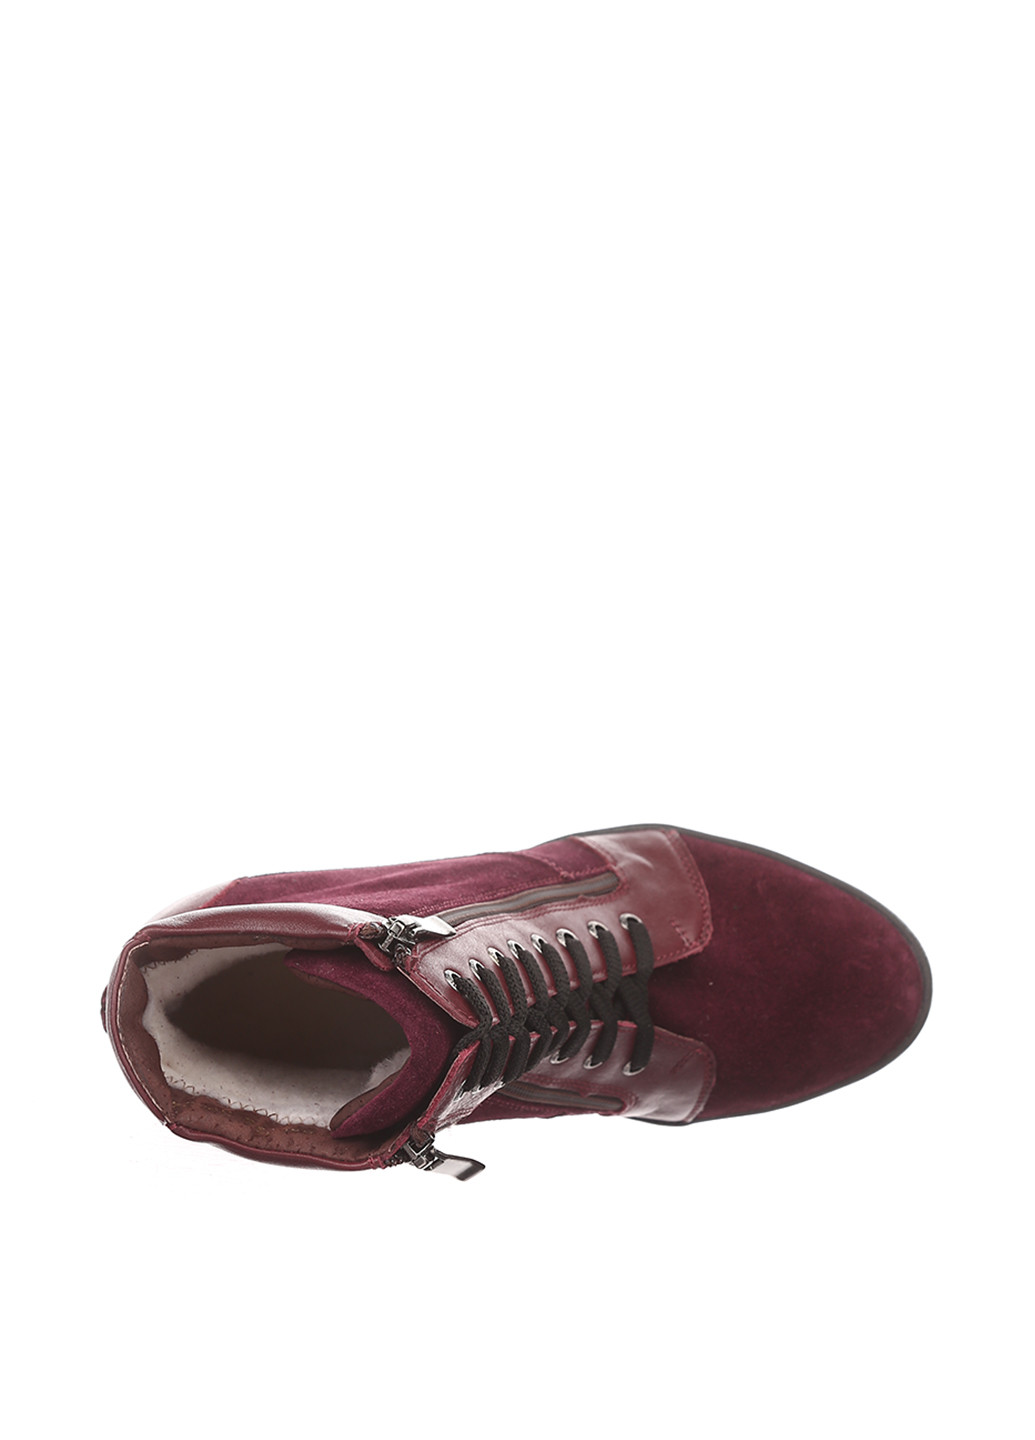 Осенние ботинки Avis со шнуровкой из натуральной замши